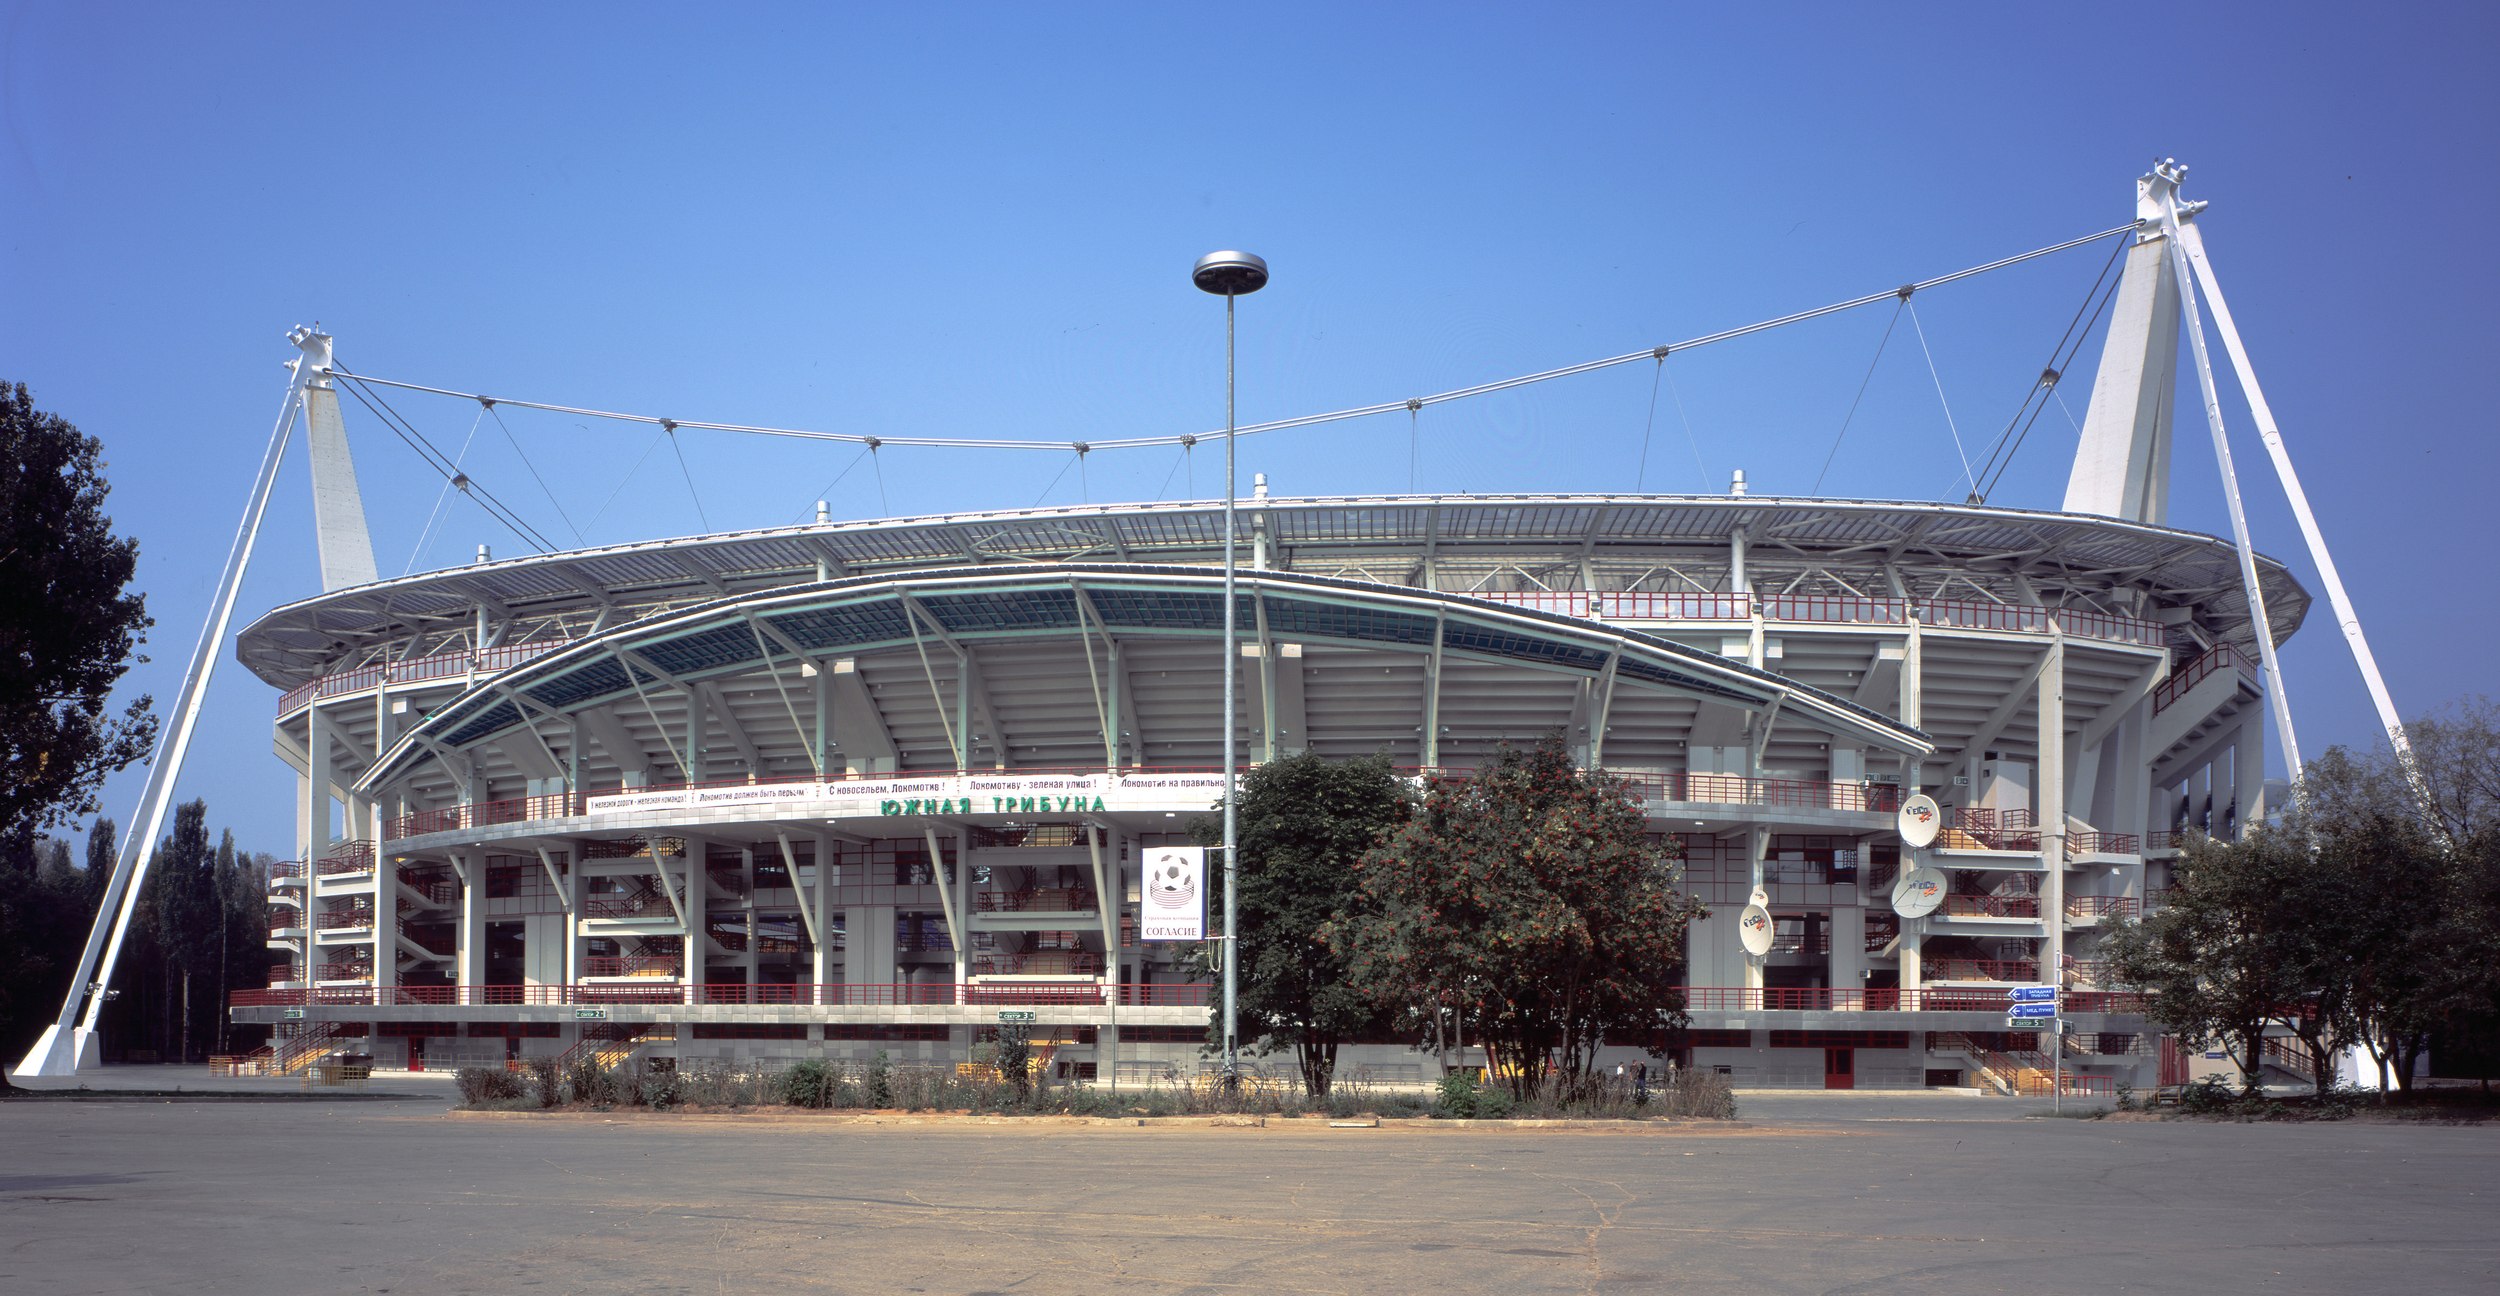 стадион в черкизово москва